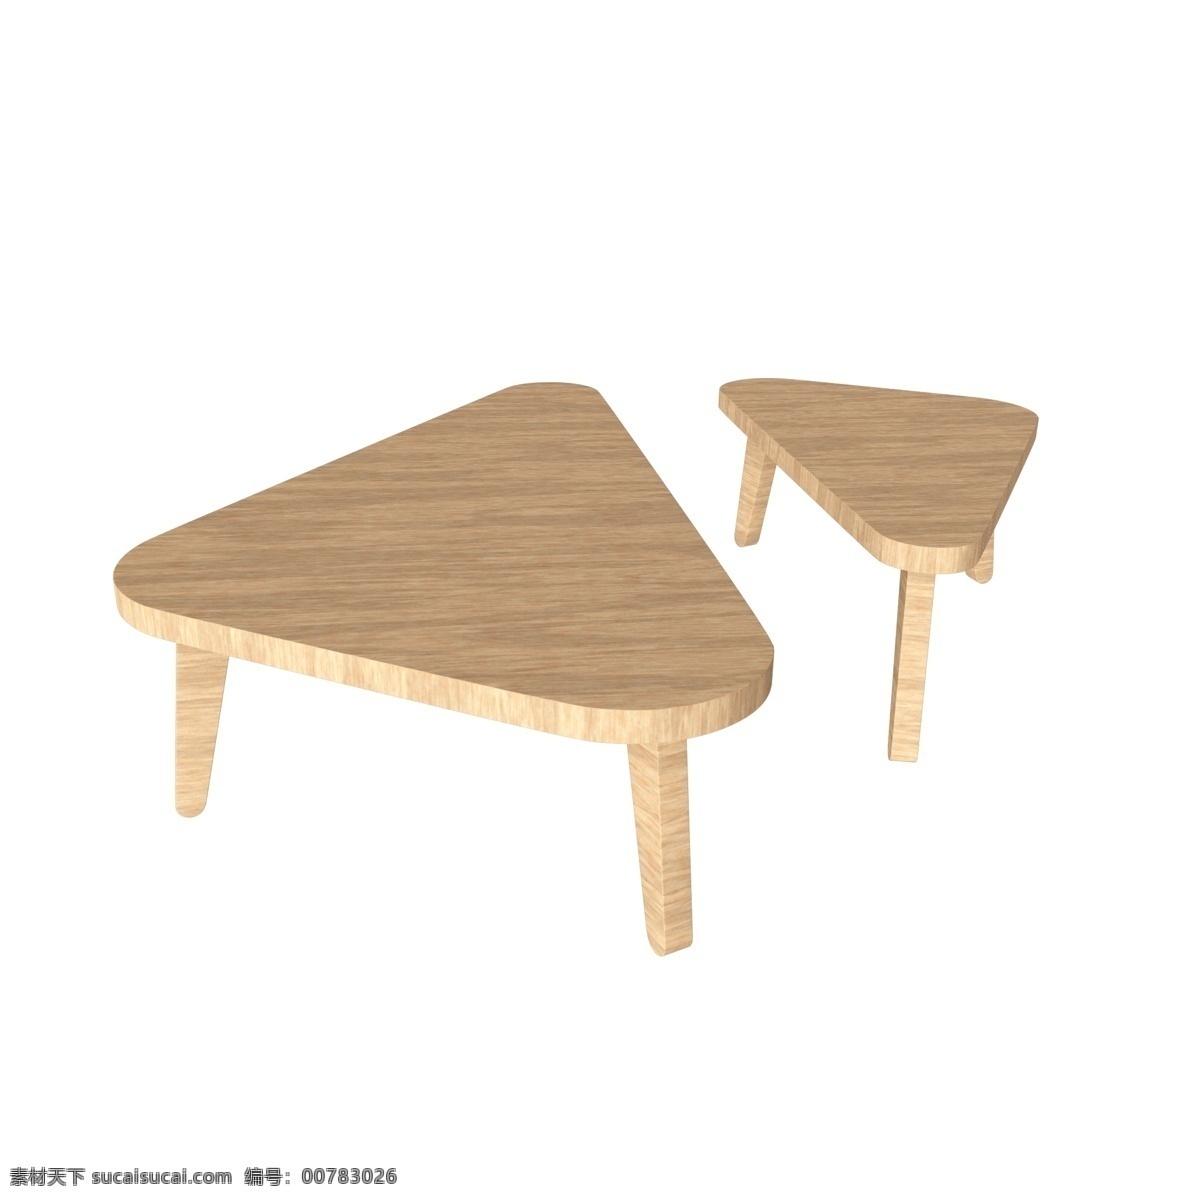 简约 日式 实木 凳子 板凳 简约椅子 实木板凳 木头椅子 坐凳 家具 家居 日式家居 日式家具 简约家居